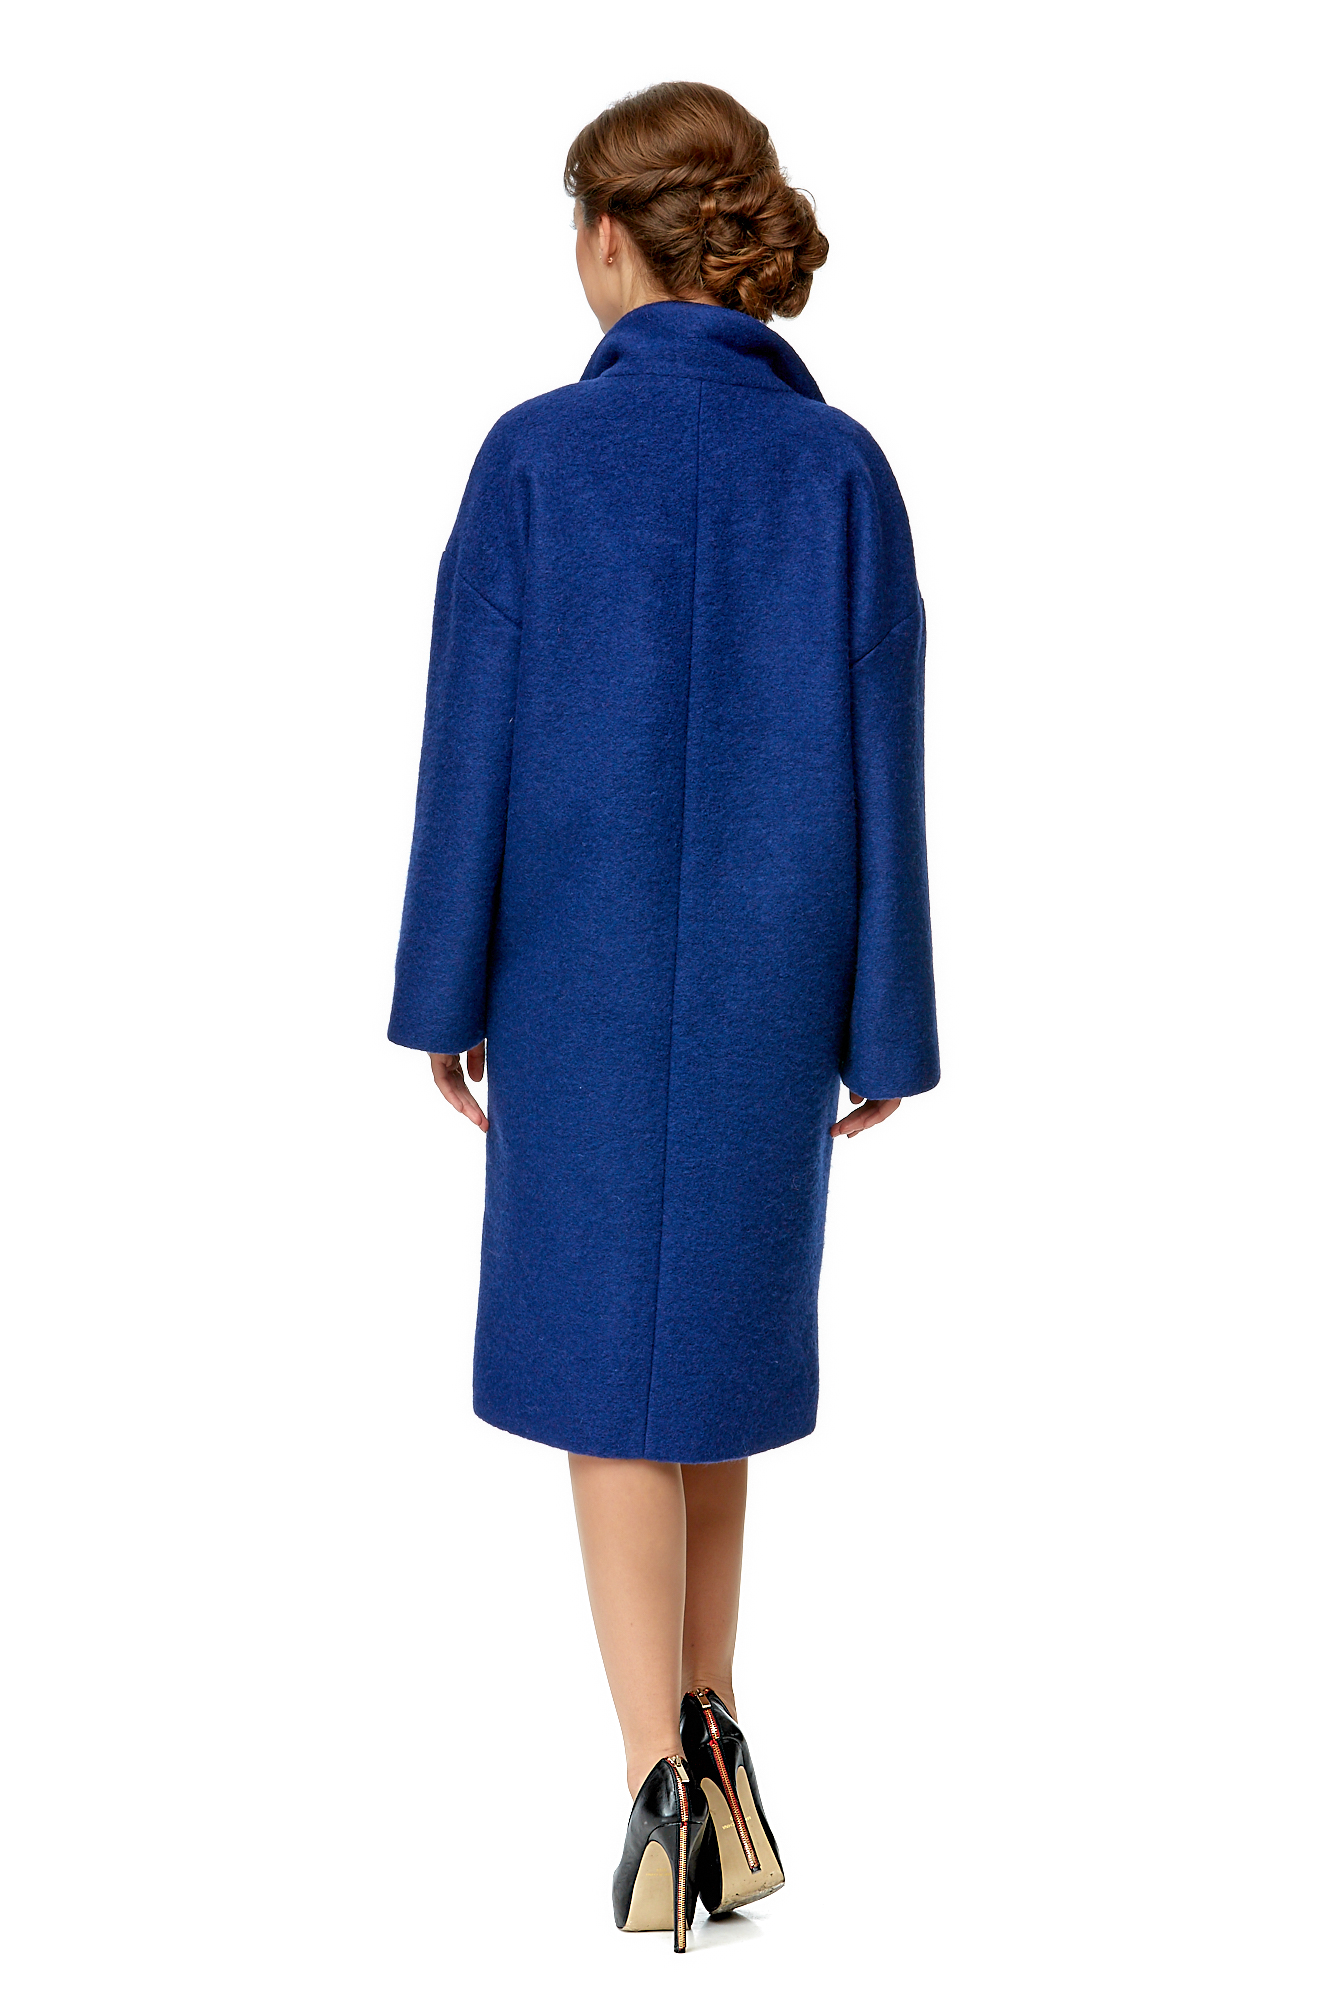 Женское пальто из текстиля с воротником 8001979-3